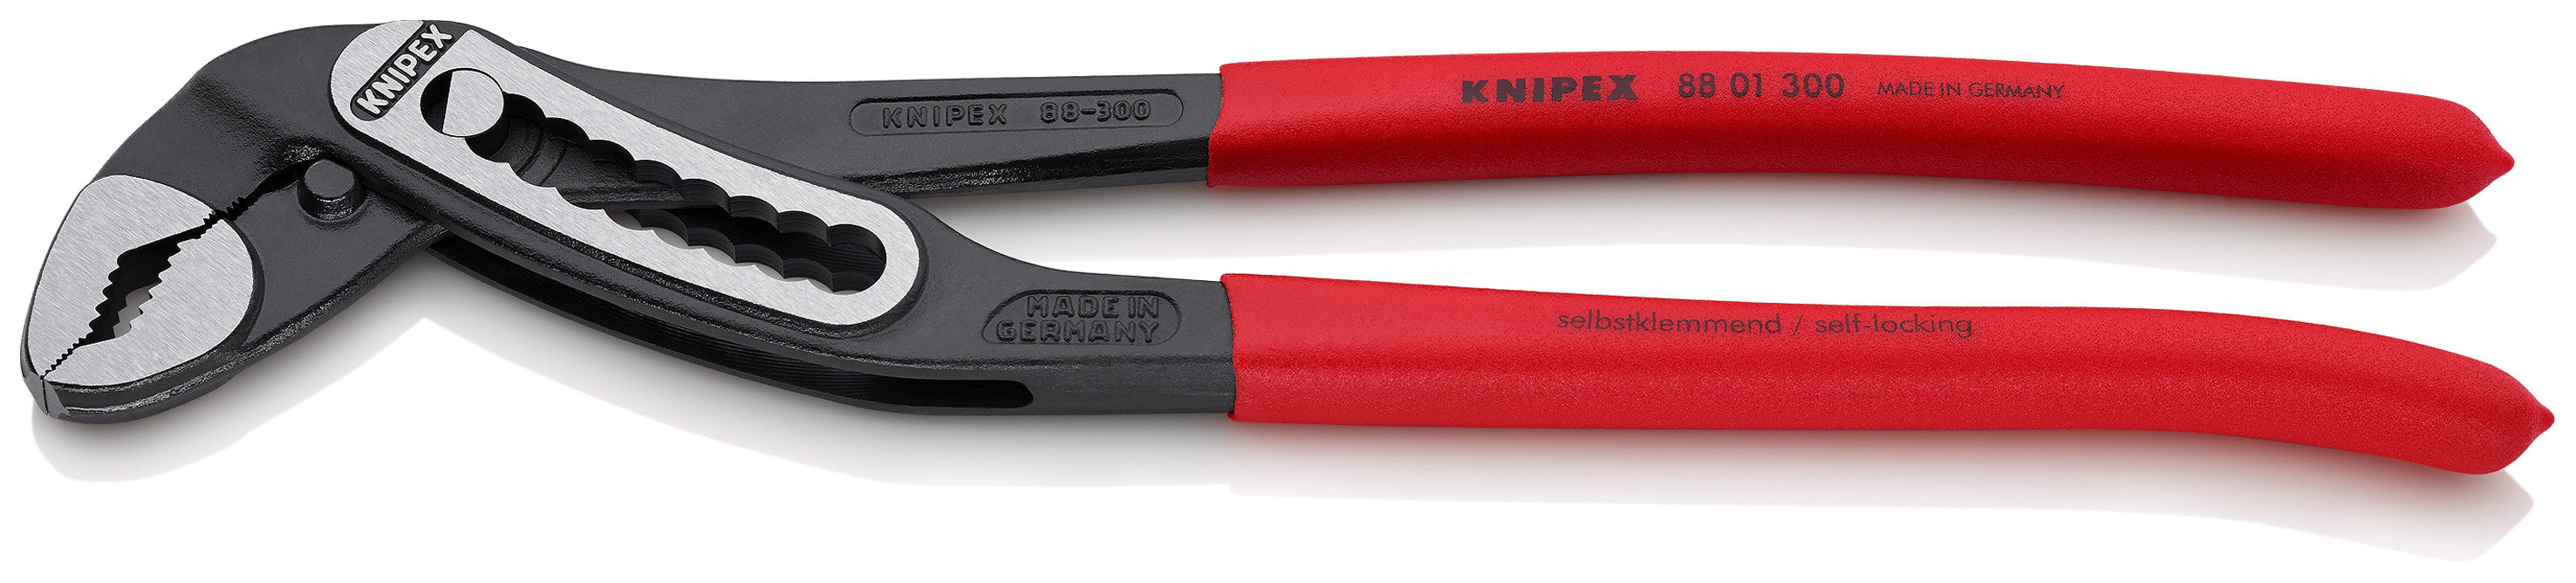 Knipex pinza reg.mod.88.01 gr.300 alligator KNIPEX-WERK